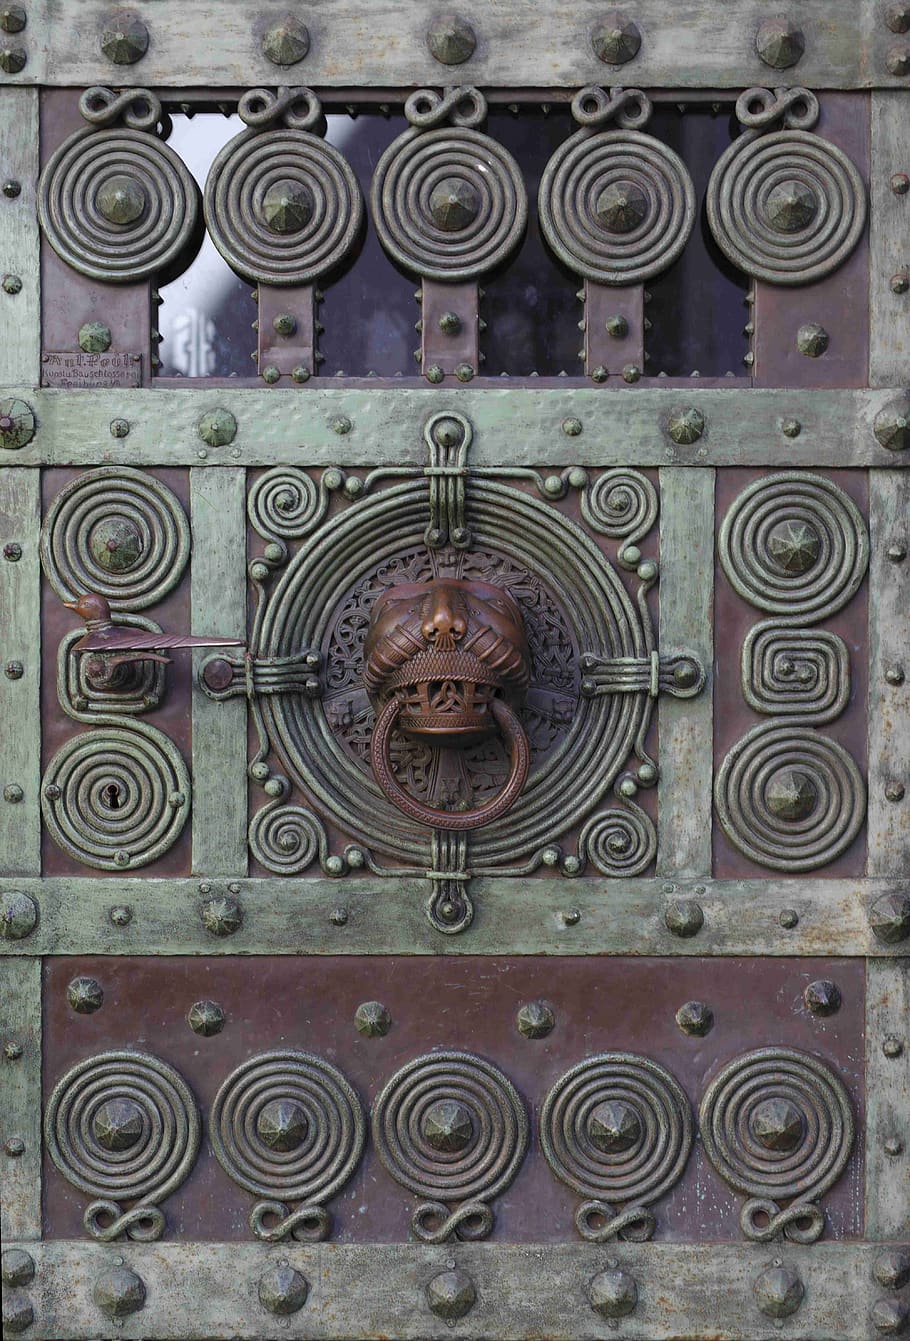 door, germany, freiburg, building, entrance, medieval, metalwork, ornate, circles, metal